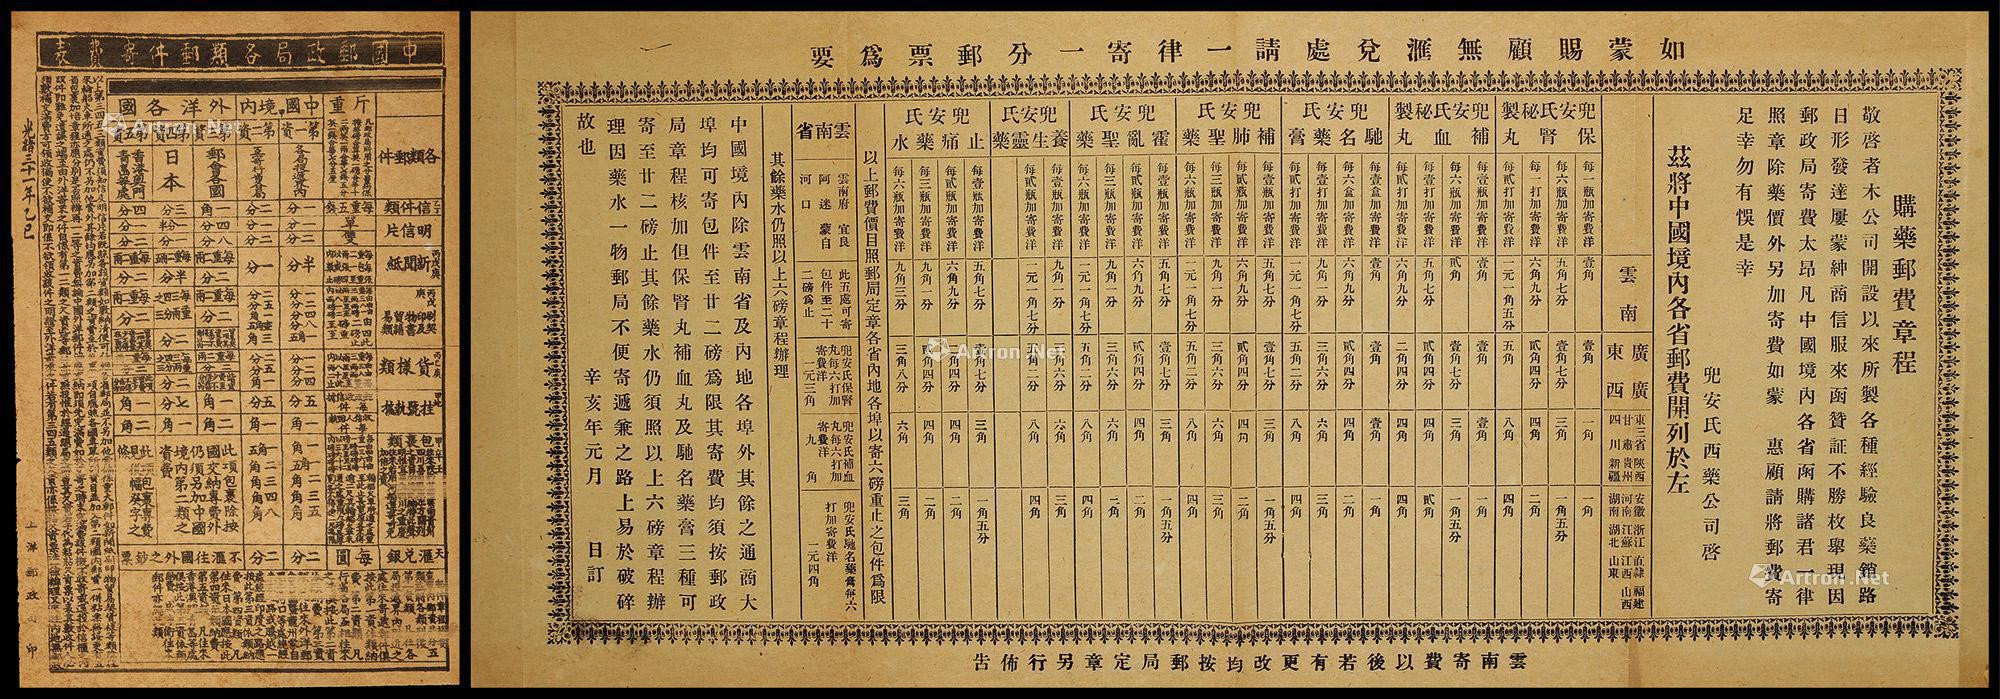 光绪三十一年（1905年）中国邮政局各类邮件计费表及1911年兜安氏西药公司购药邮费章程